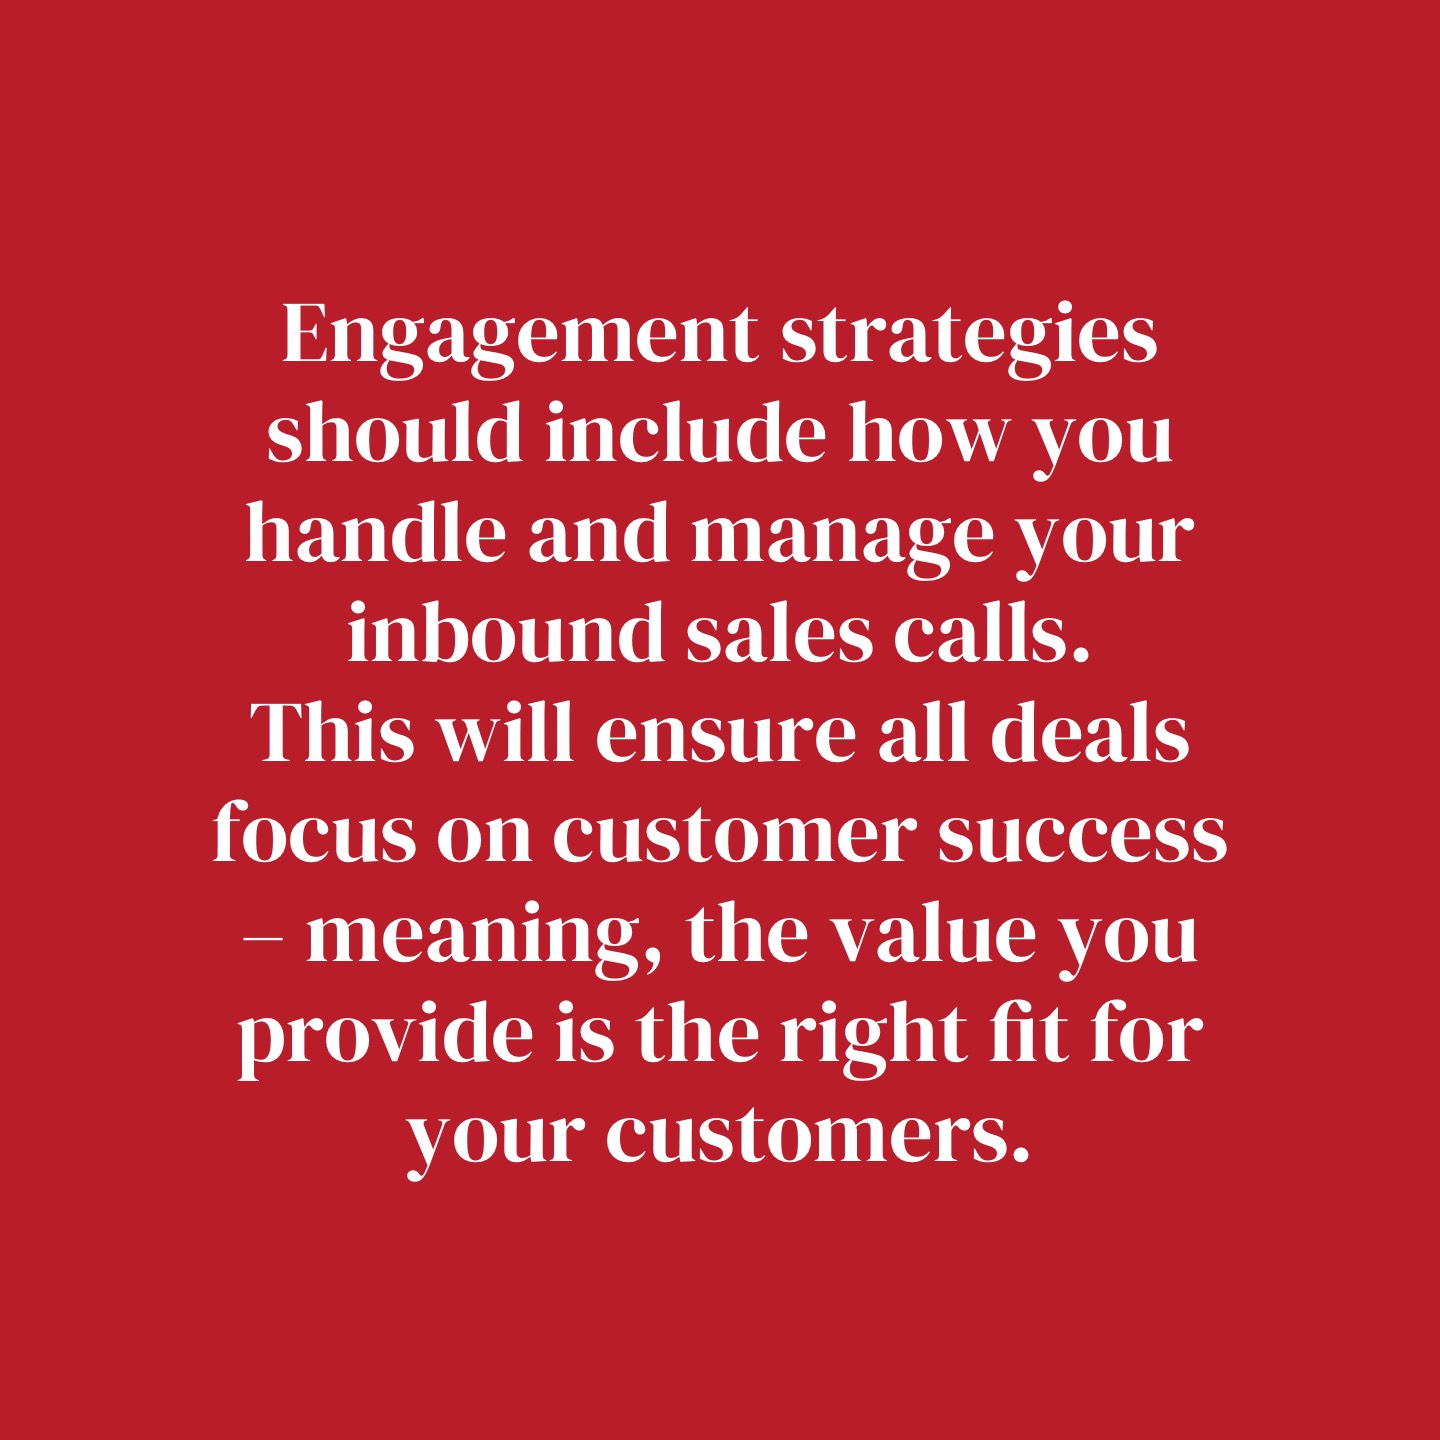 Engagement strategies for inbound marketing 